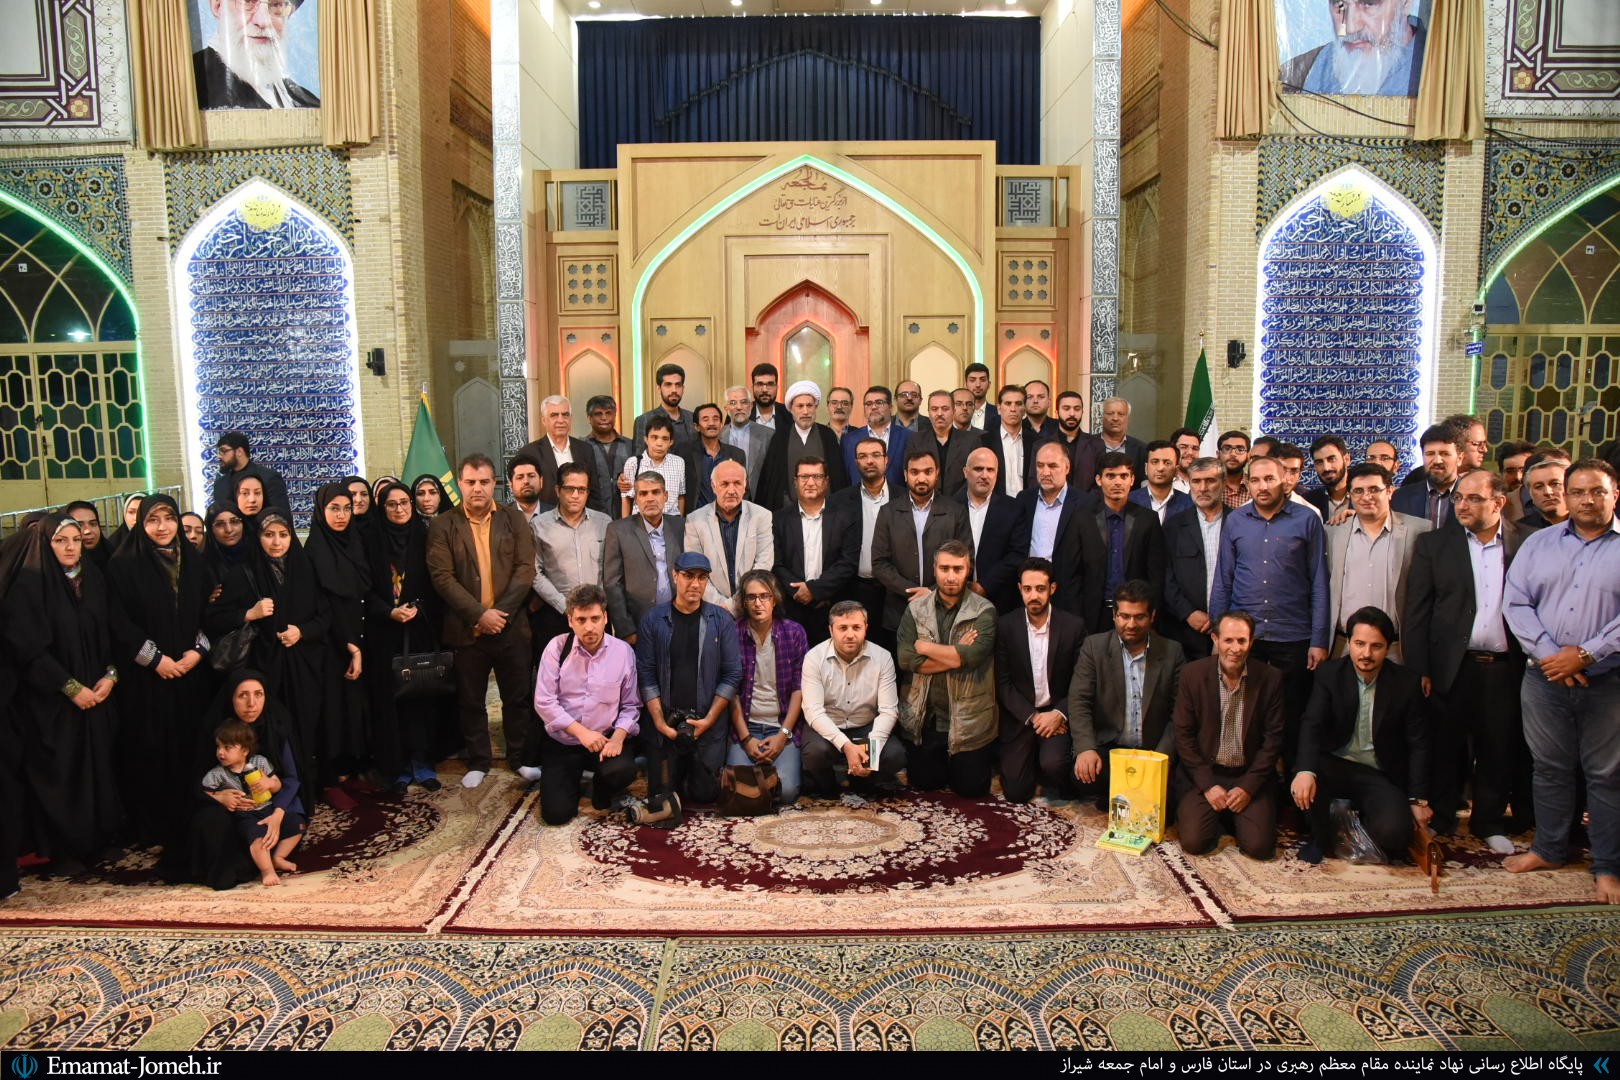 نشست صمیمی آیت الله دژکام با اهالی فرهنگ، هنرو رسانه شیراز